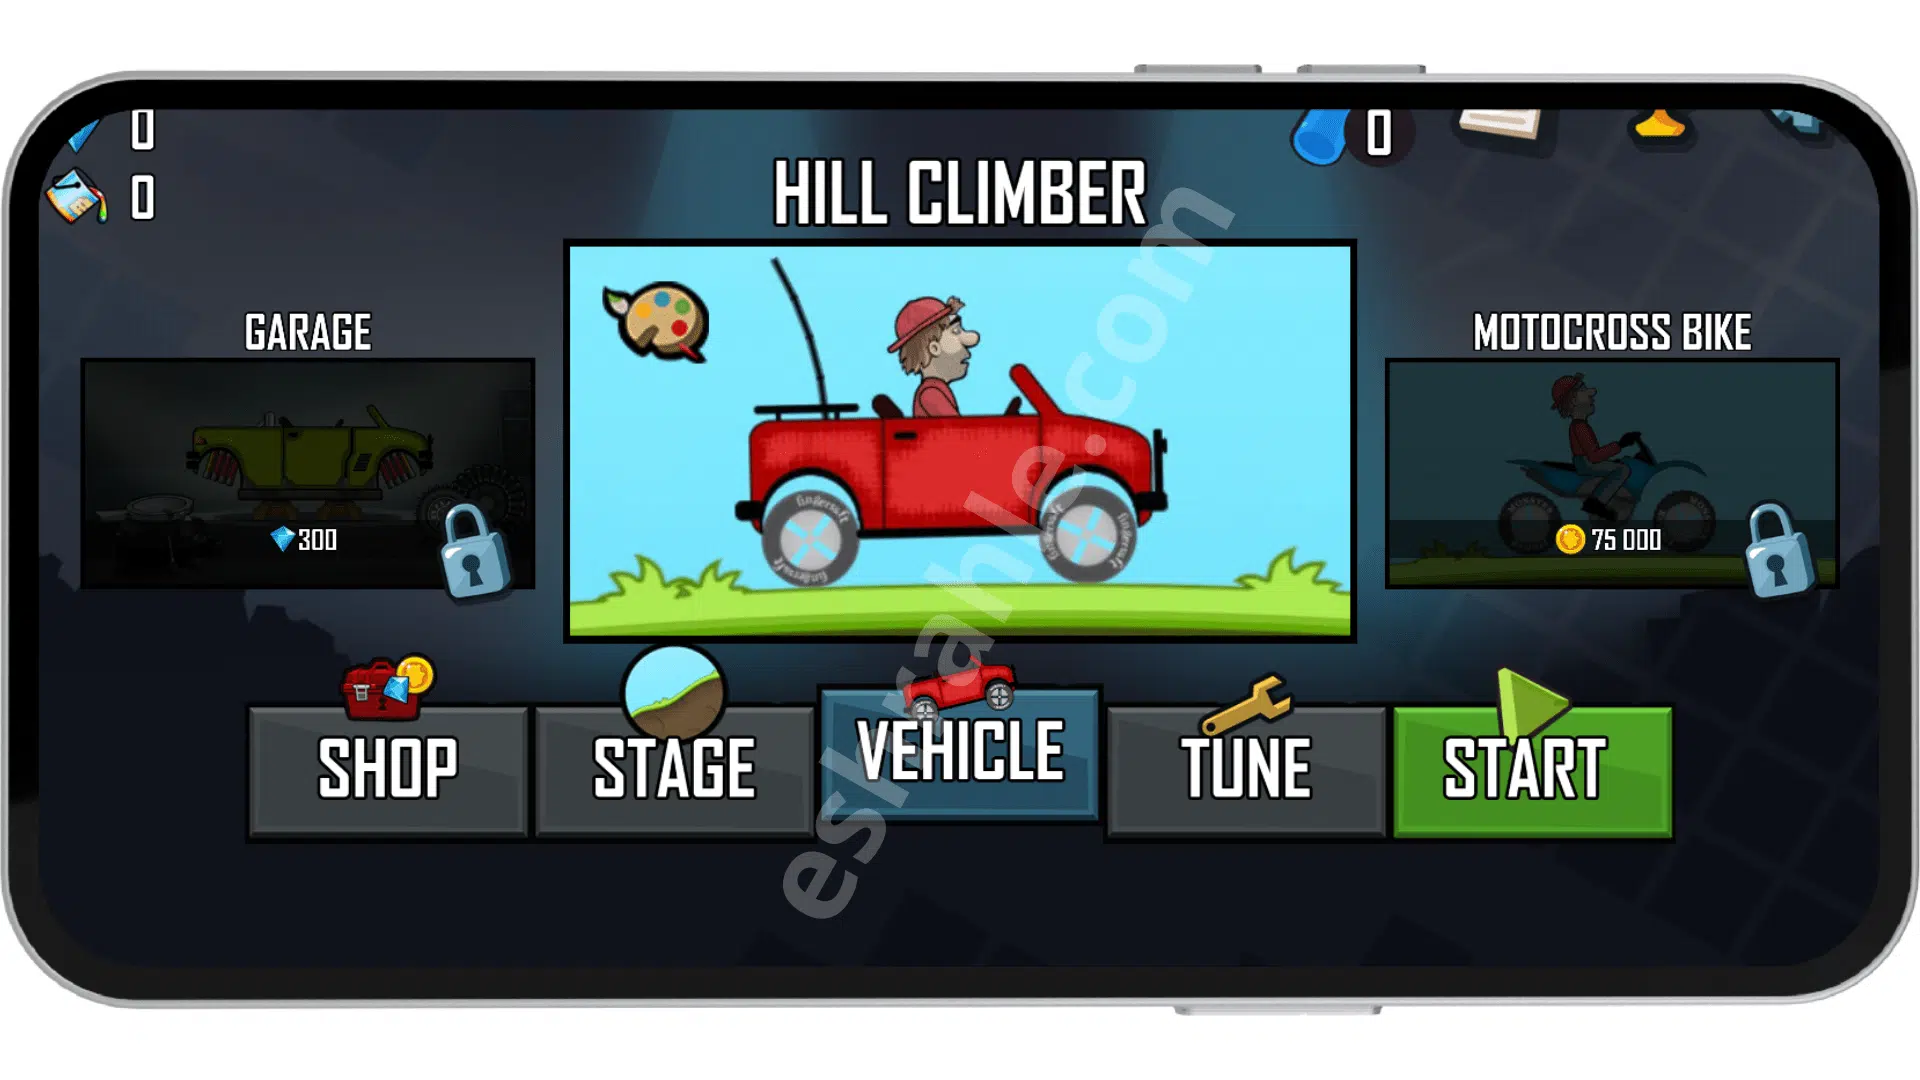 تحميل لعبة hill climb racing مهكرة من ميديا فاير اخر اصدار